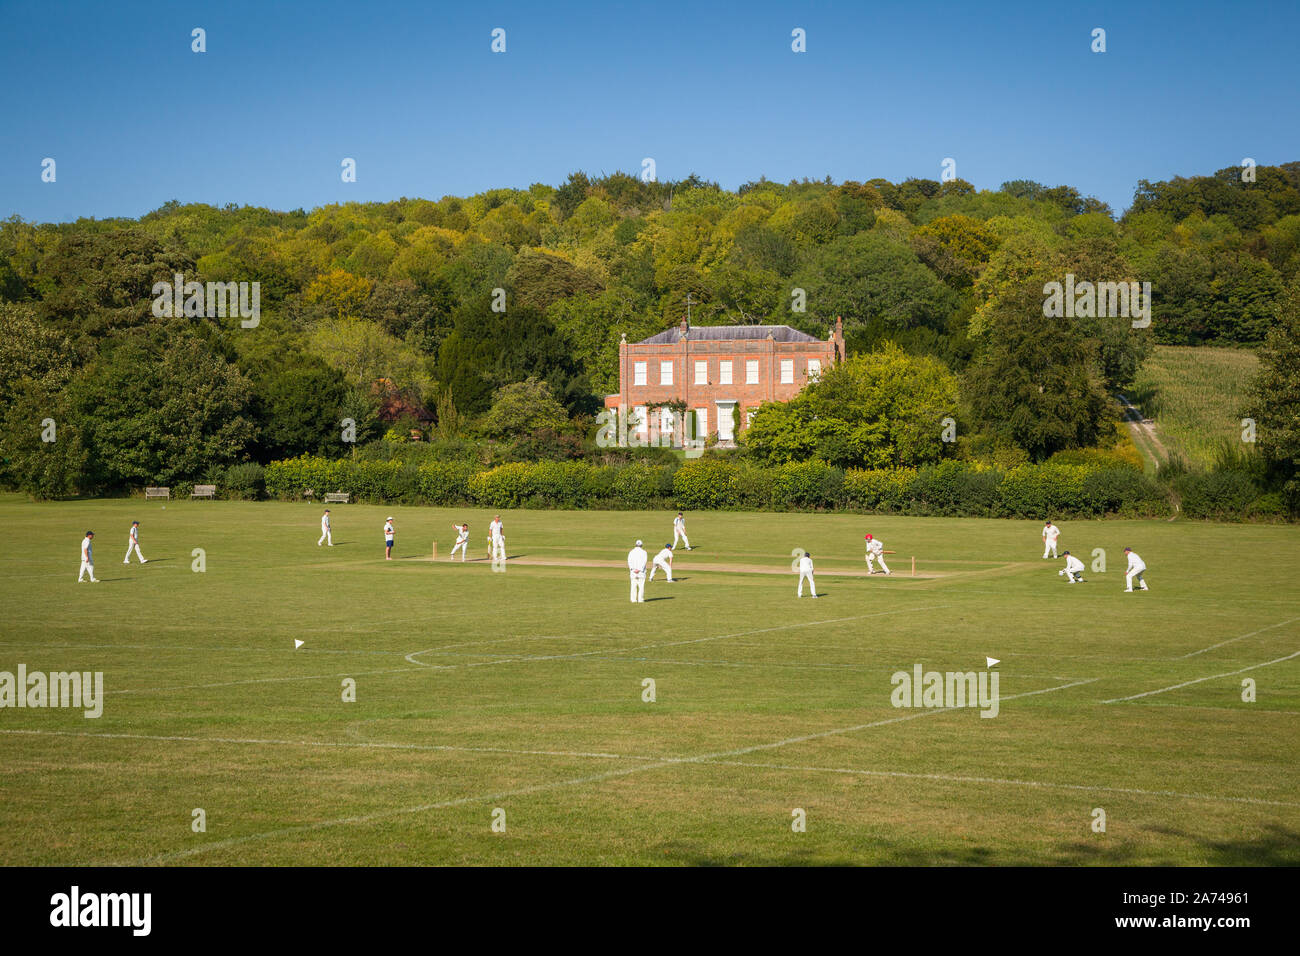 Un village match de cricket Hambleden, Buckinghamshire Banque D'Images